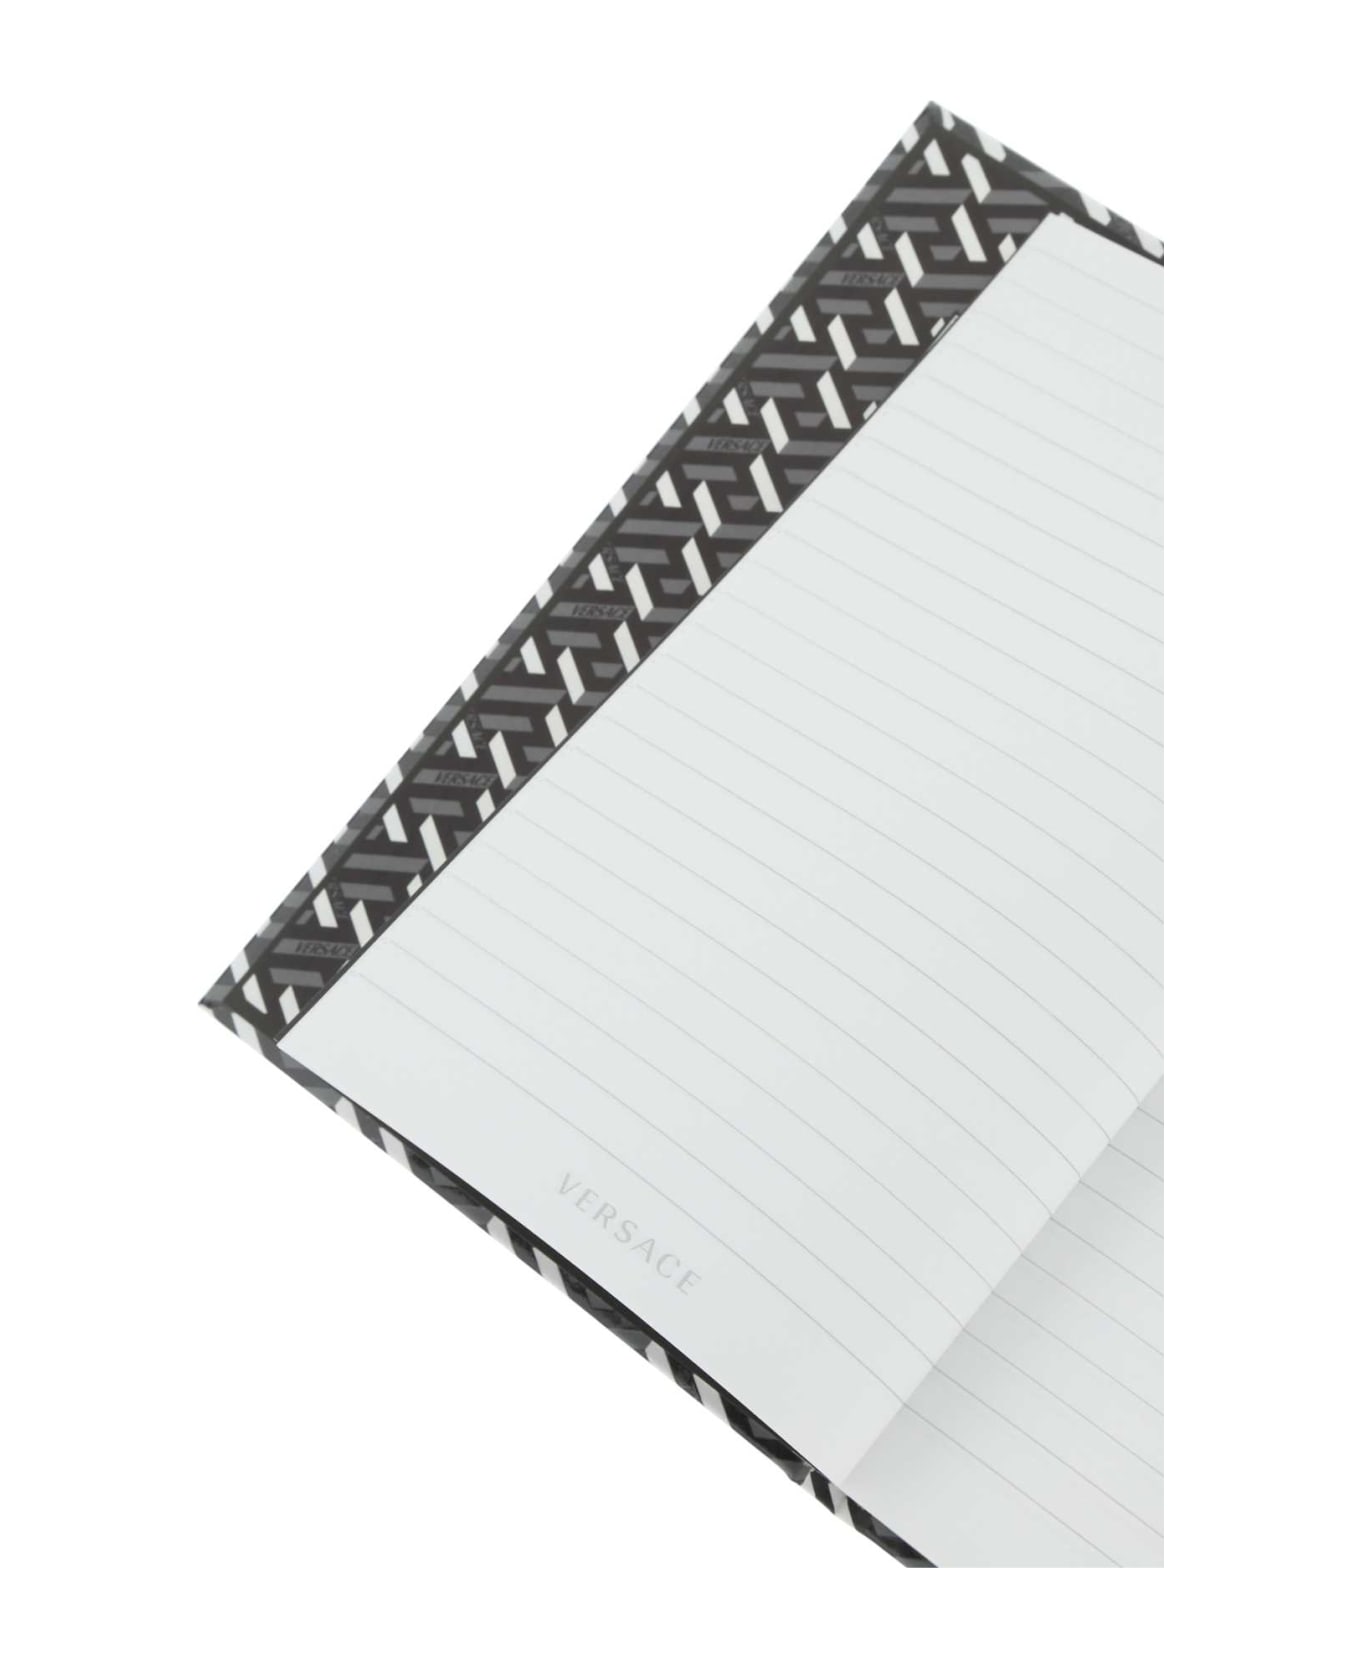 Versace Printed Cardboard Notebook - 5B820 インテリア雑貨